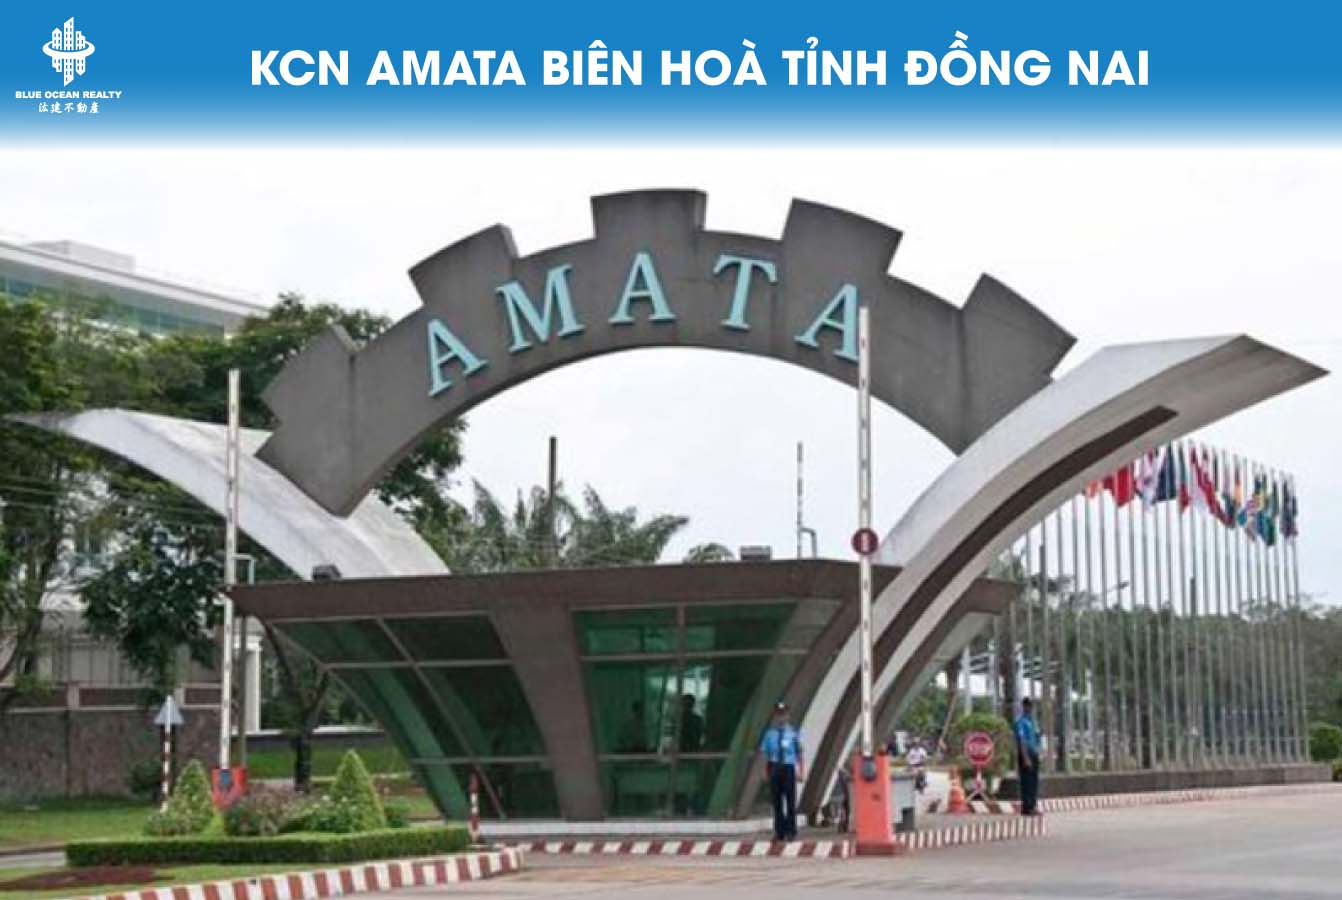 Khu công nghiệp Amata Biên Hòa tỉnh Đồng Nai